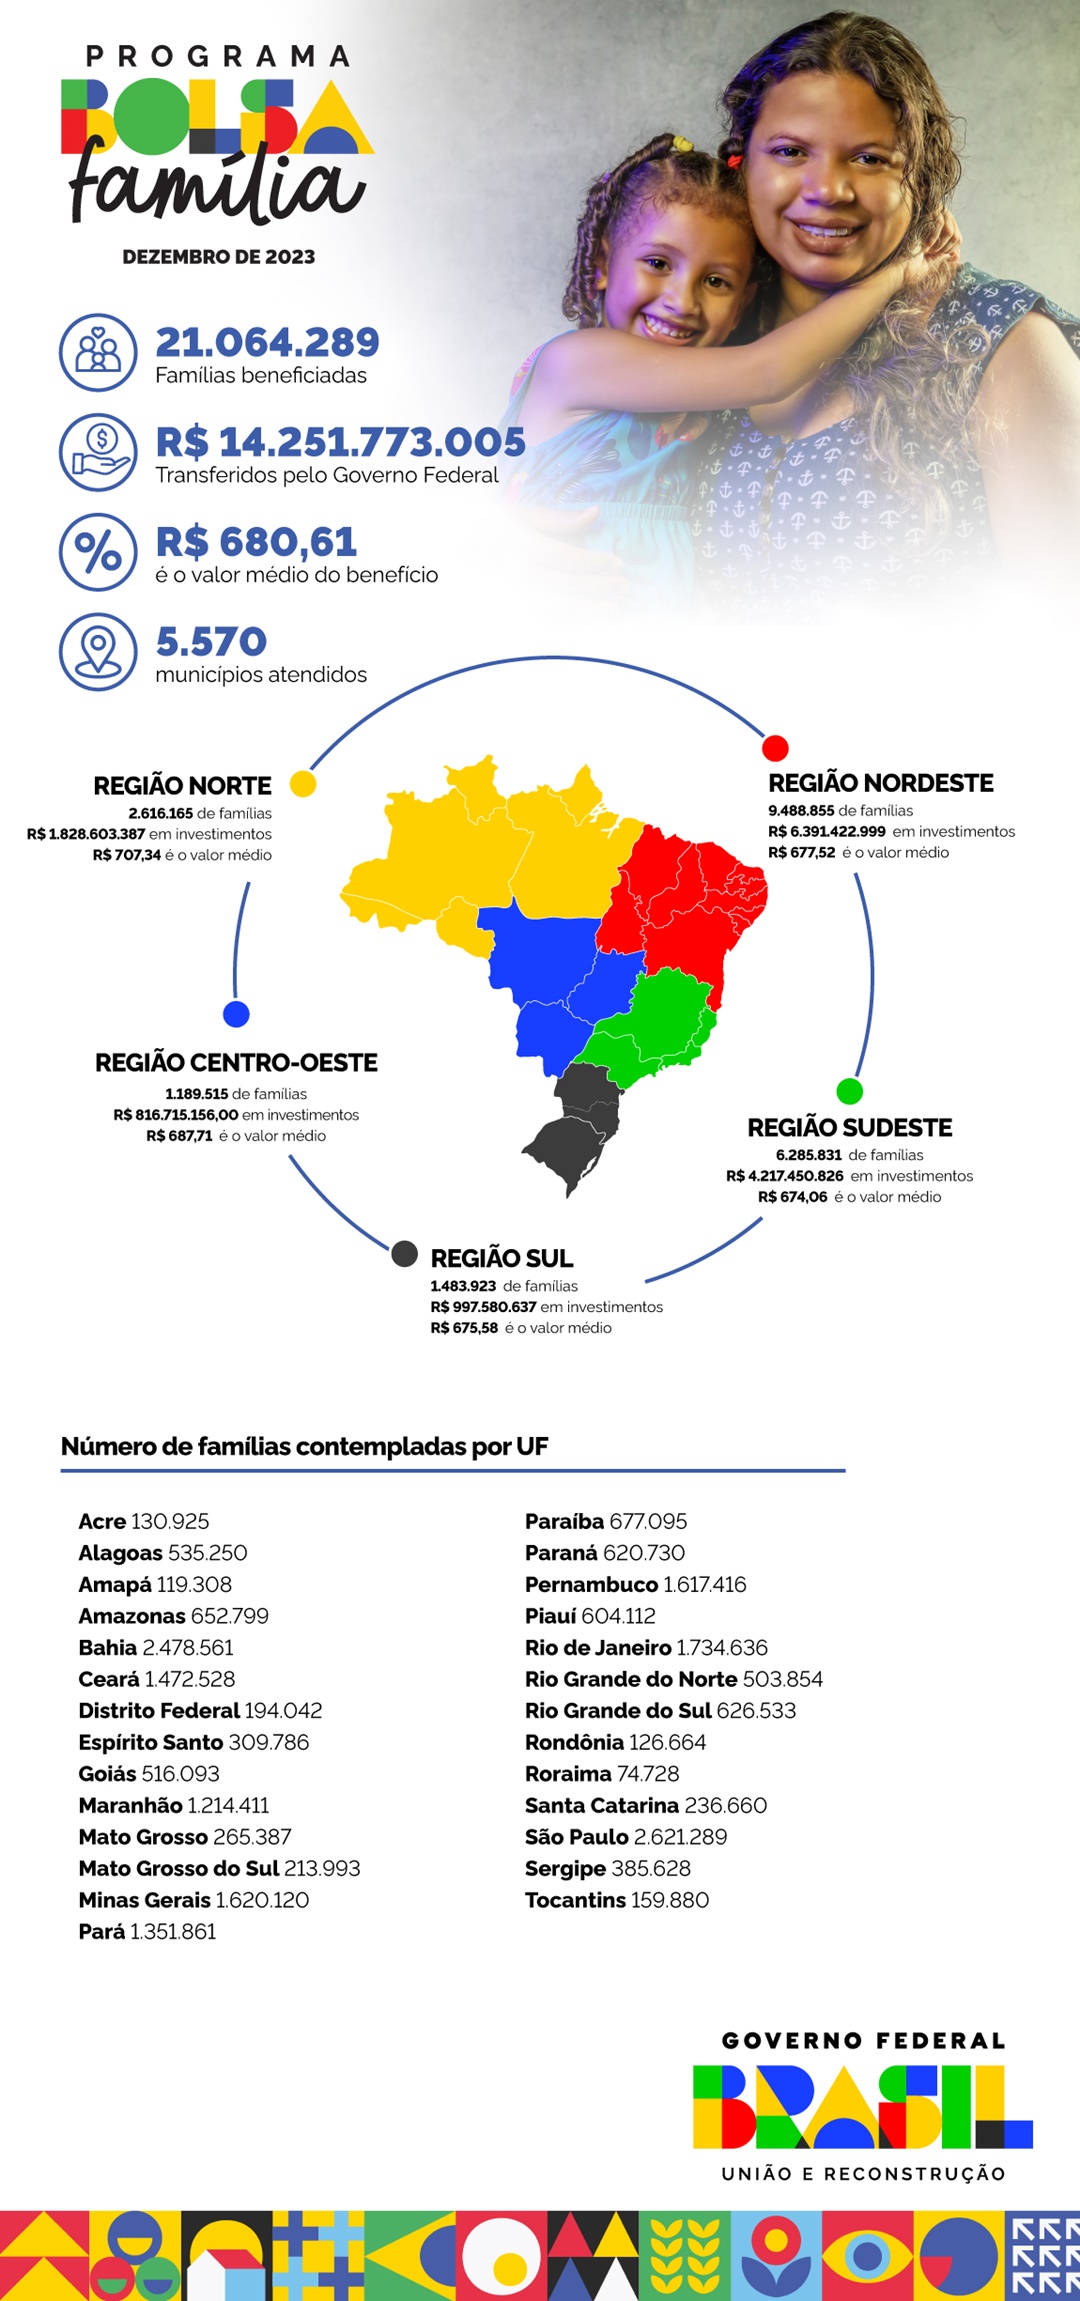 Panorama do Bolsa Família no Brasil, por estado